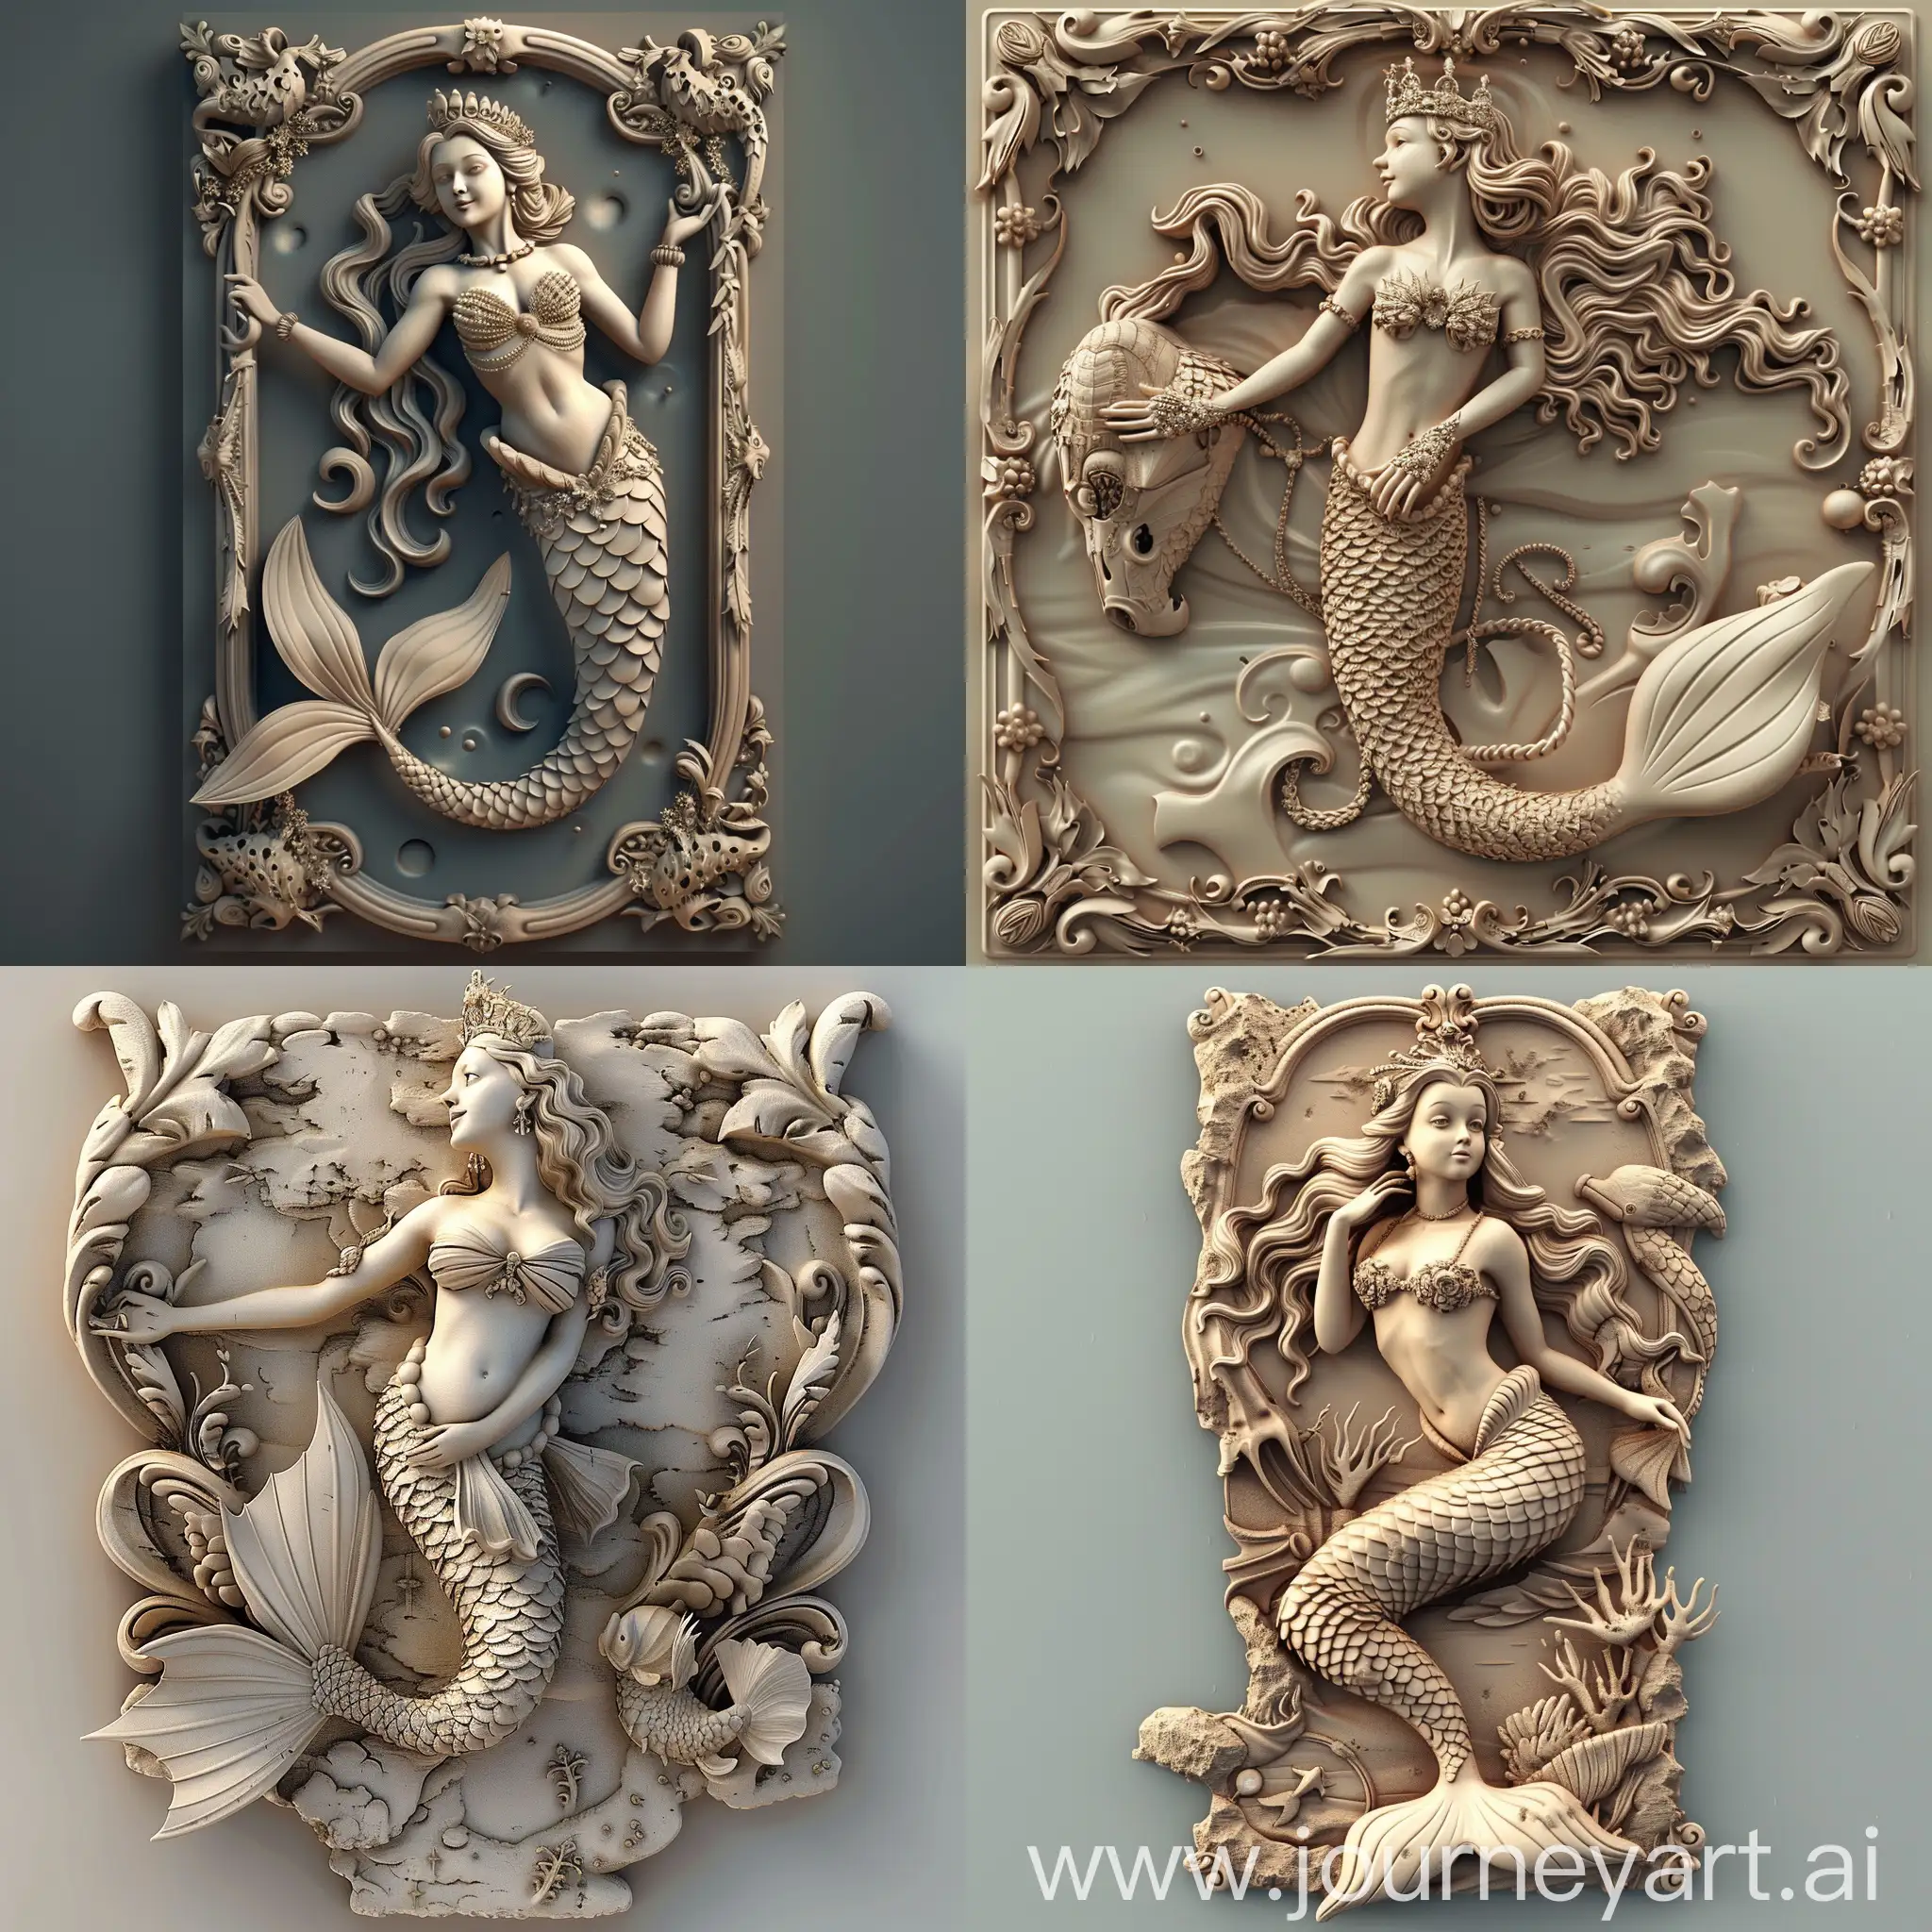 bas relief of a queen mermaid, 3d, high detail, cartoon-like